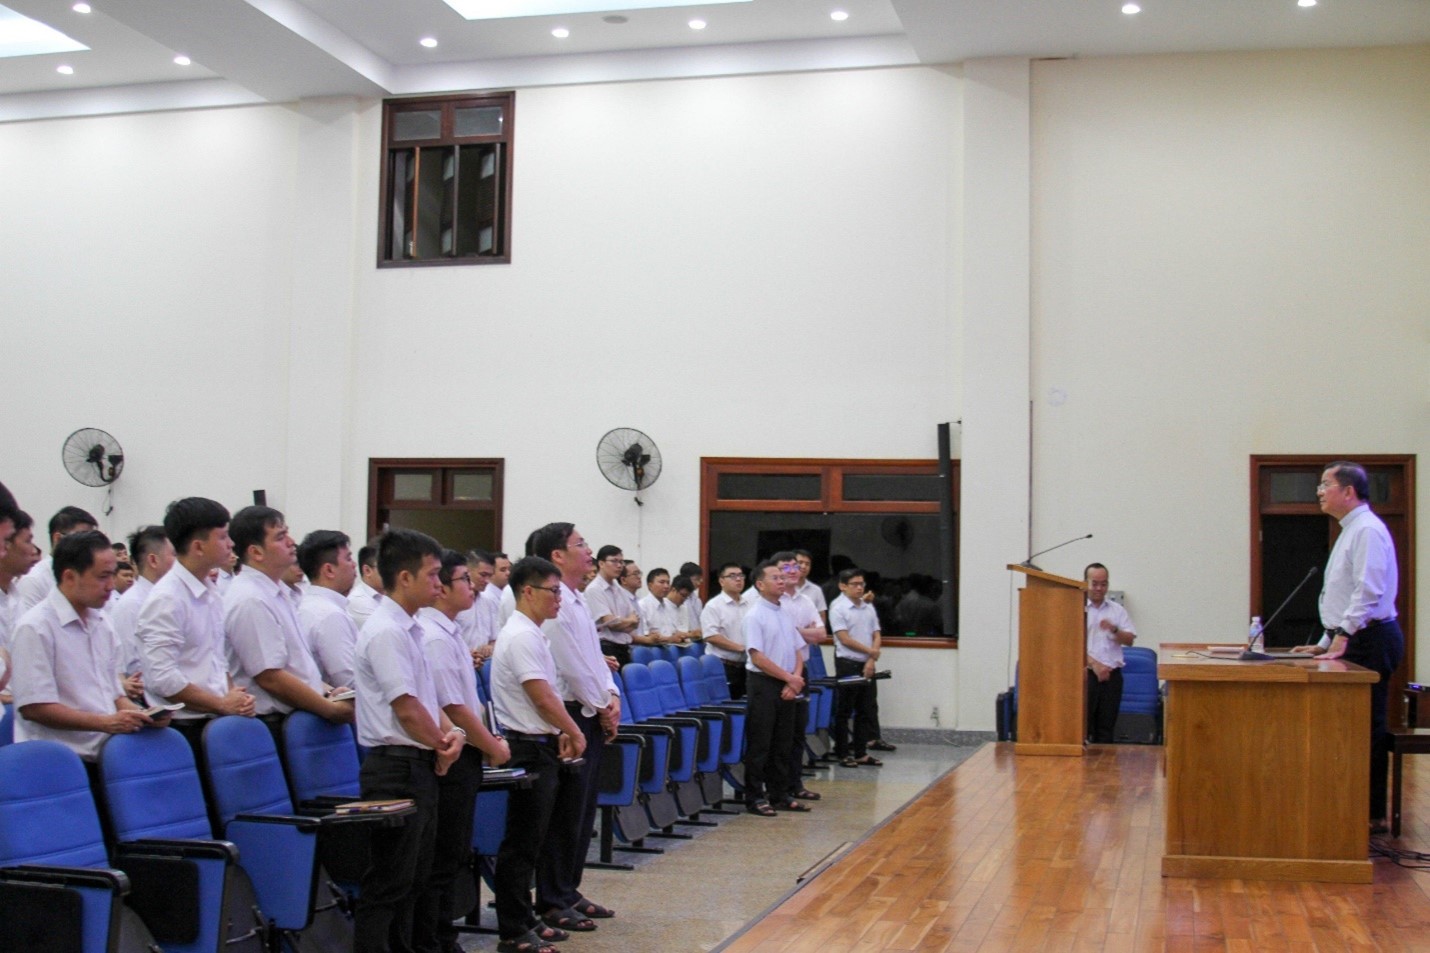 ĐCV Thánh Giuse Sài Gòn: ĐGM Giuse Nguyễn Tấn Tước thăm và huấn đức chủng sinh